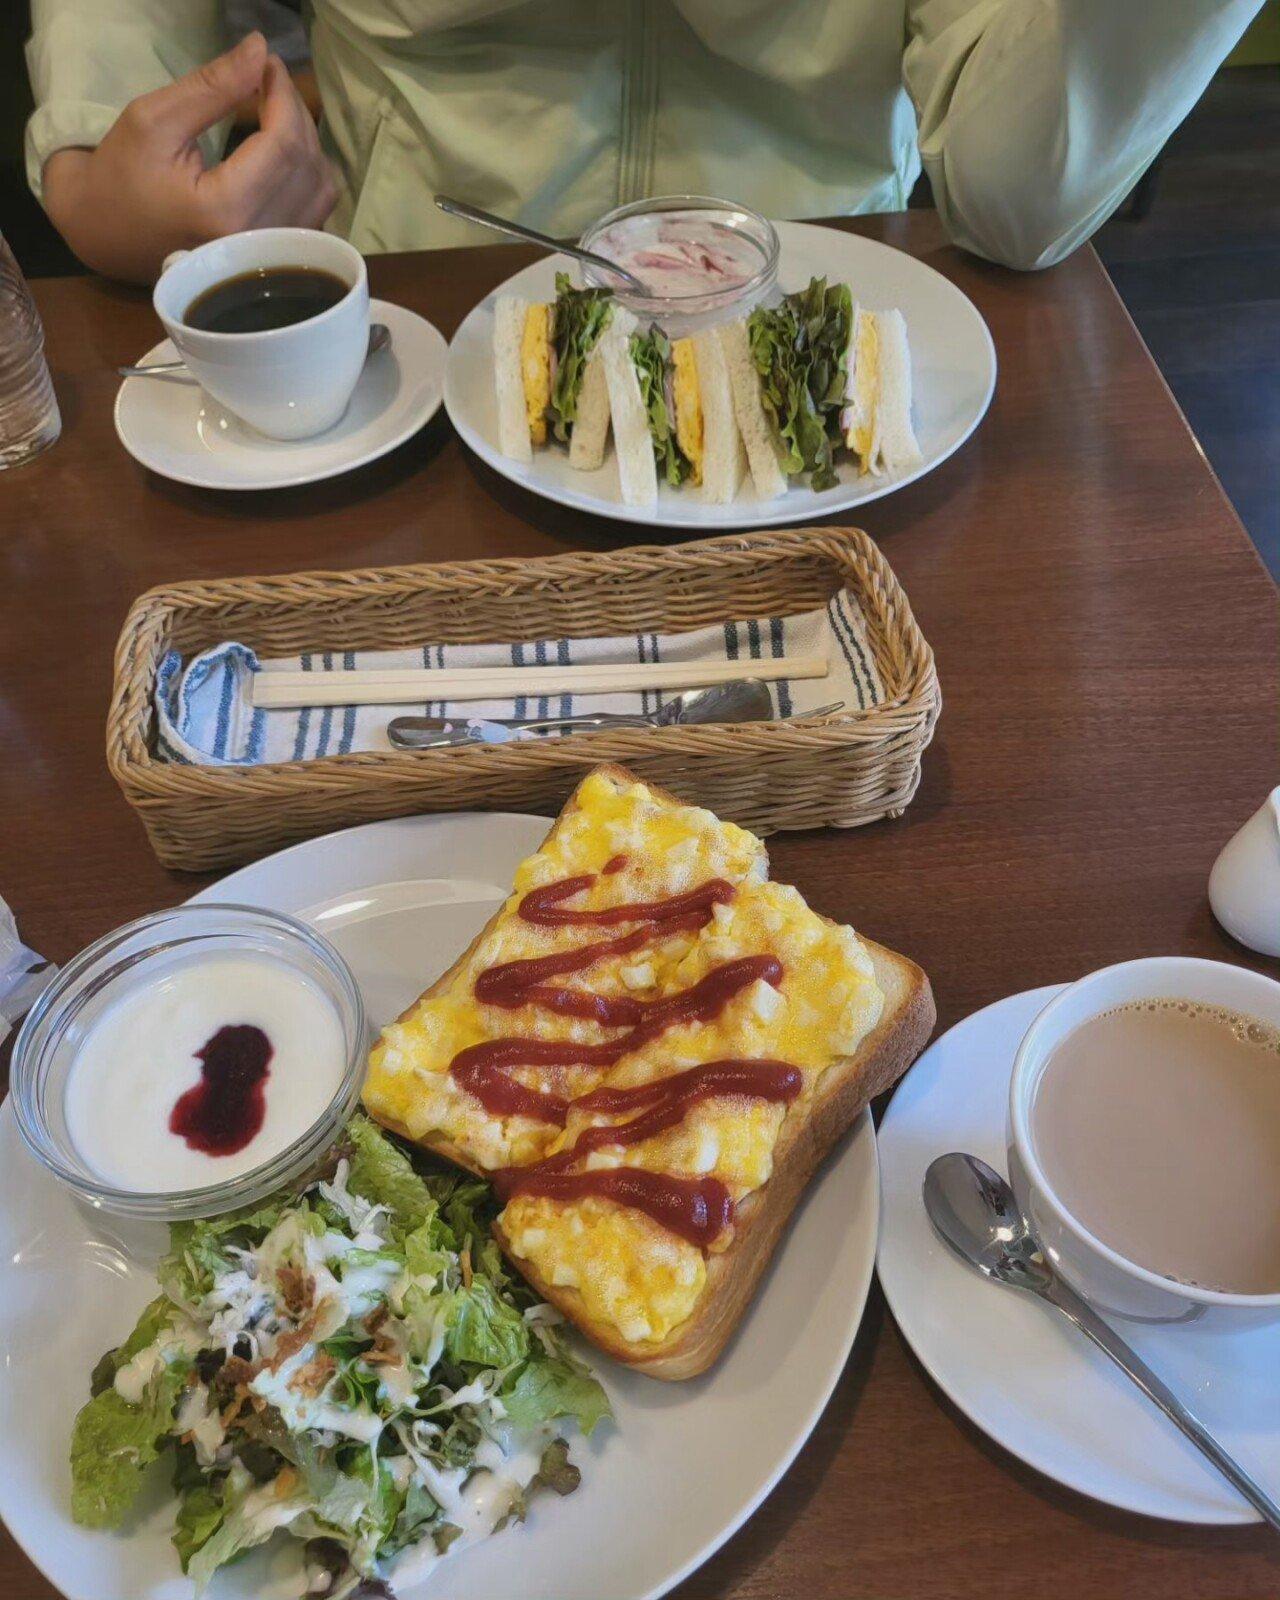 형들 저번주에 오사카갔다왔는데 아침세트메뉴 가격실화야?